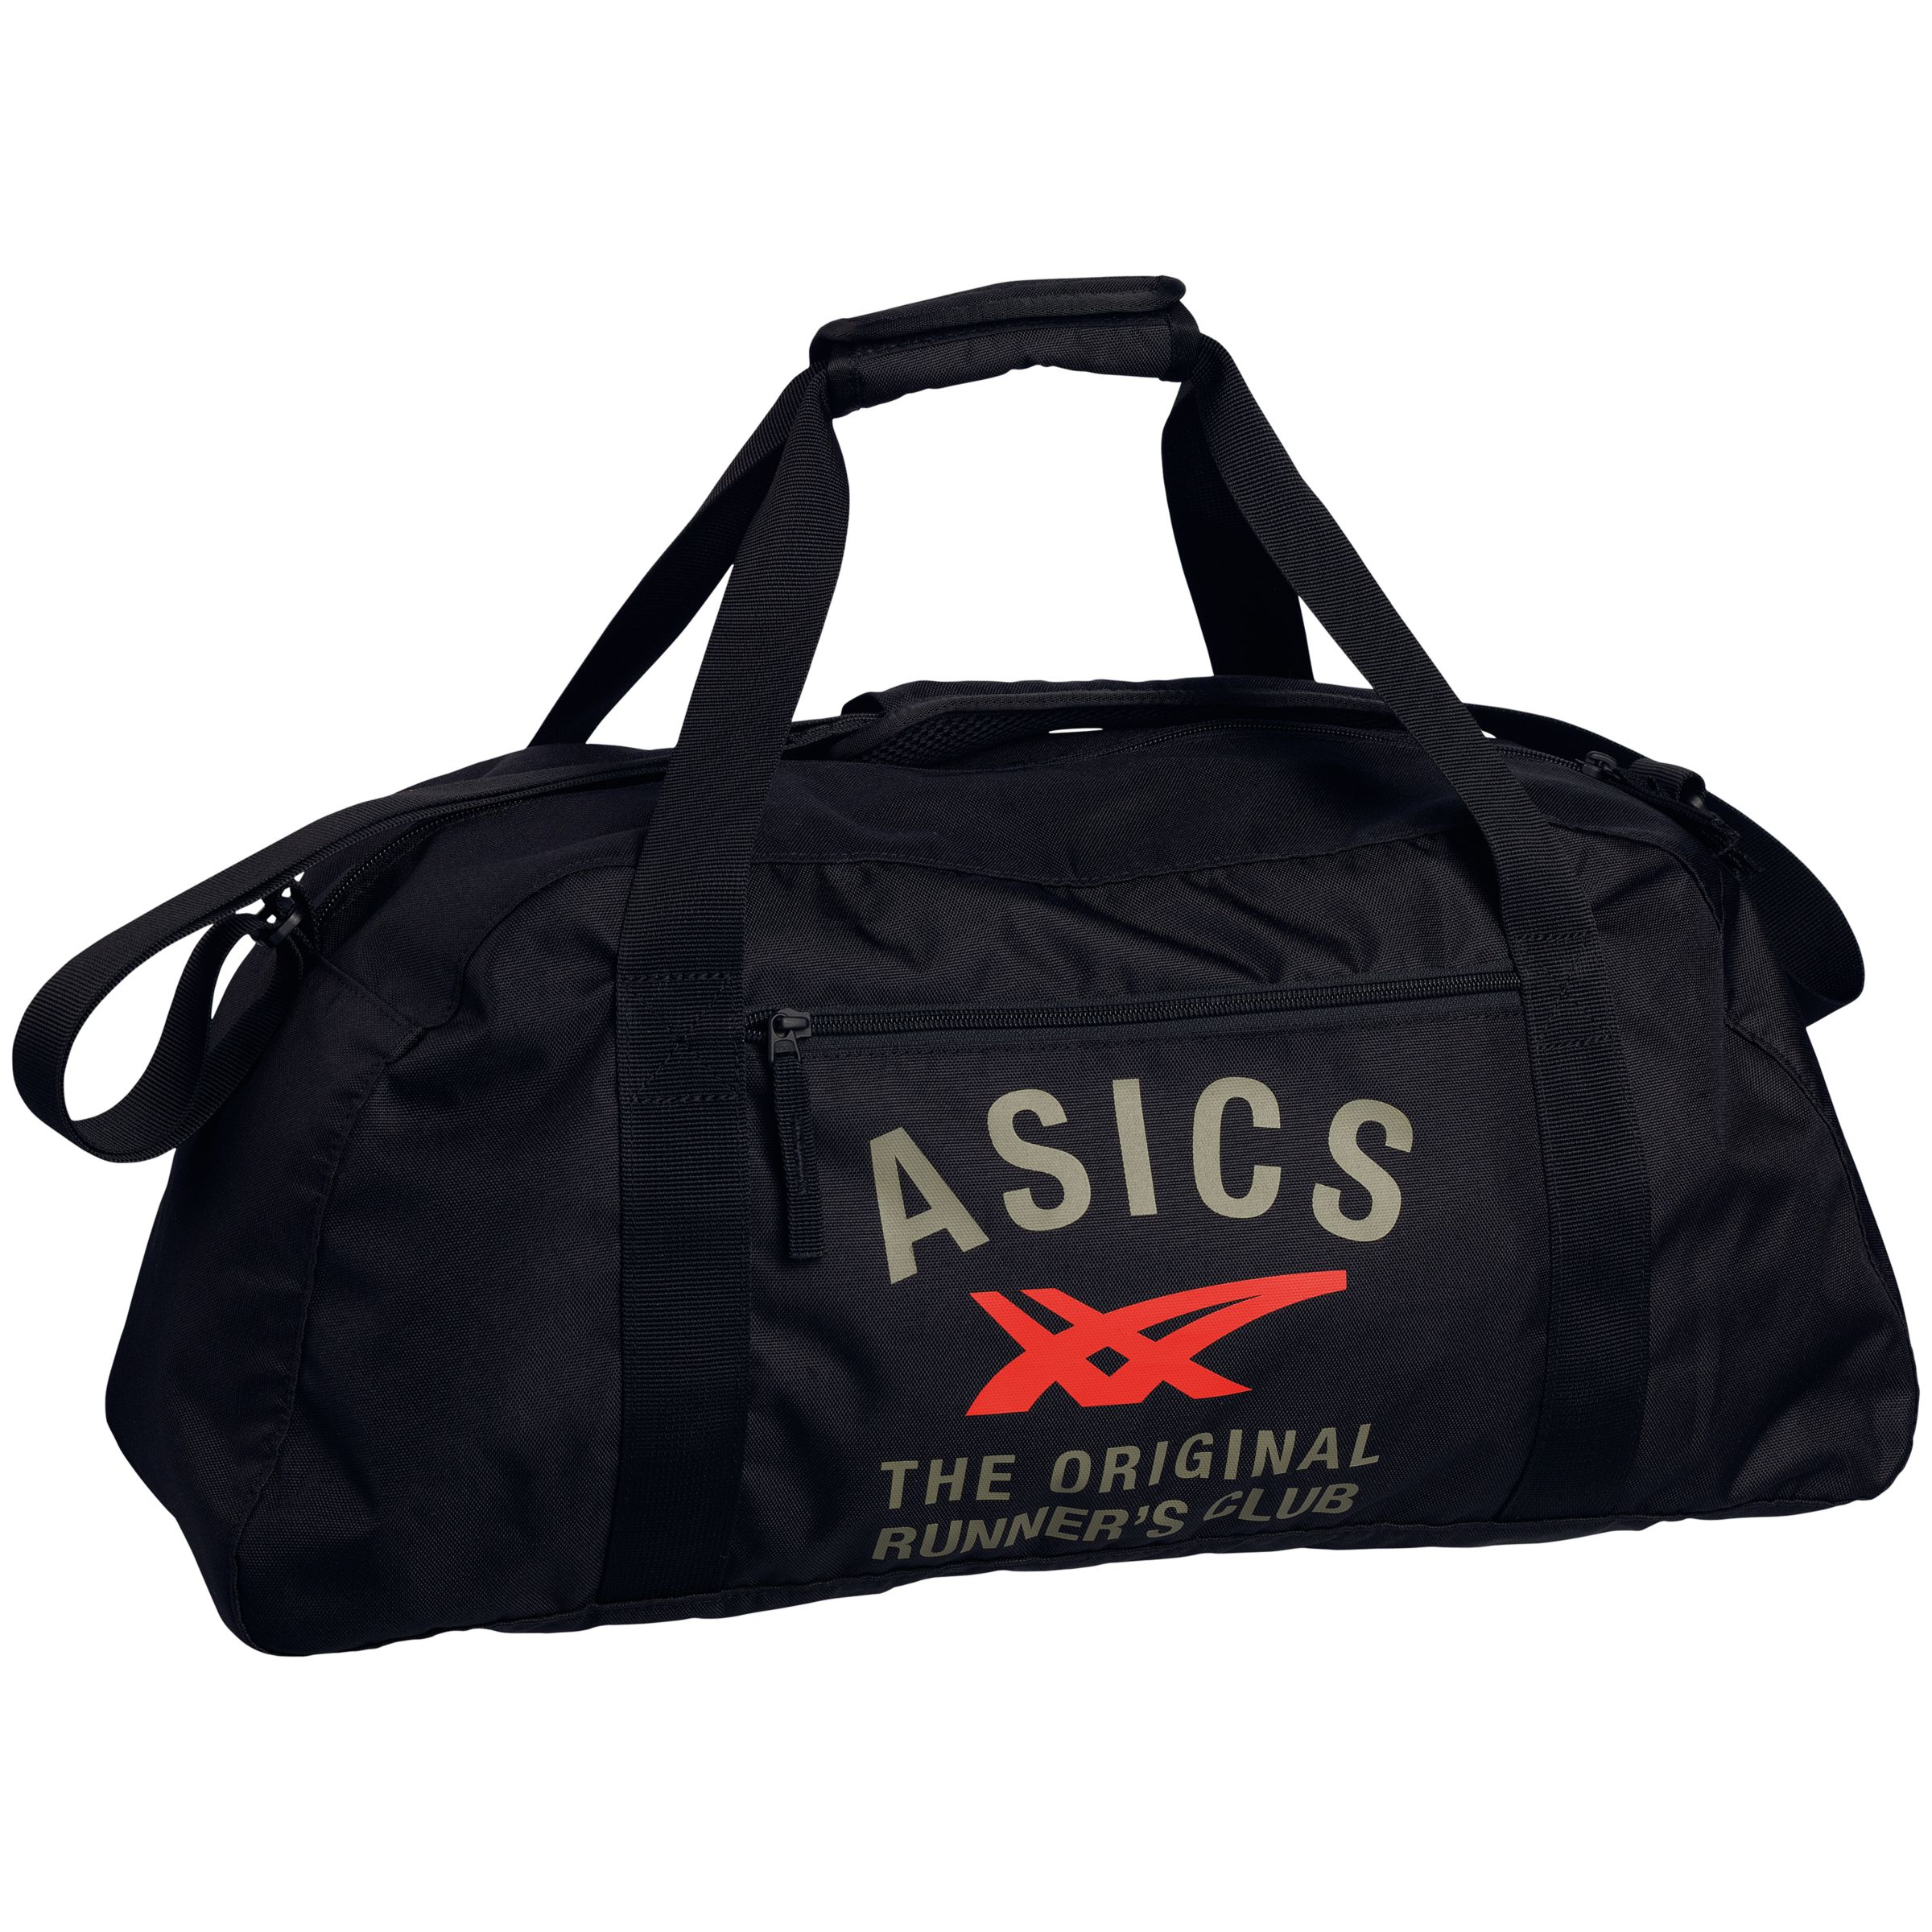 asics travel bag